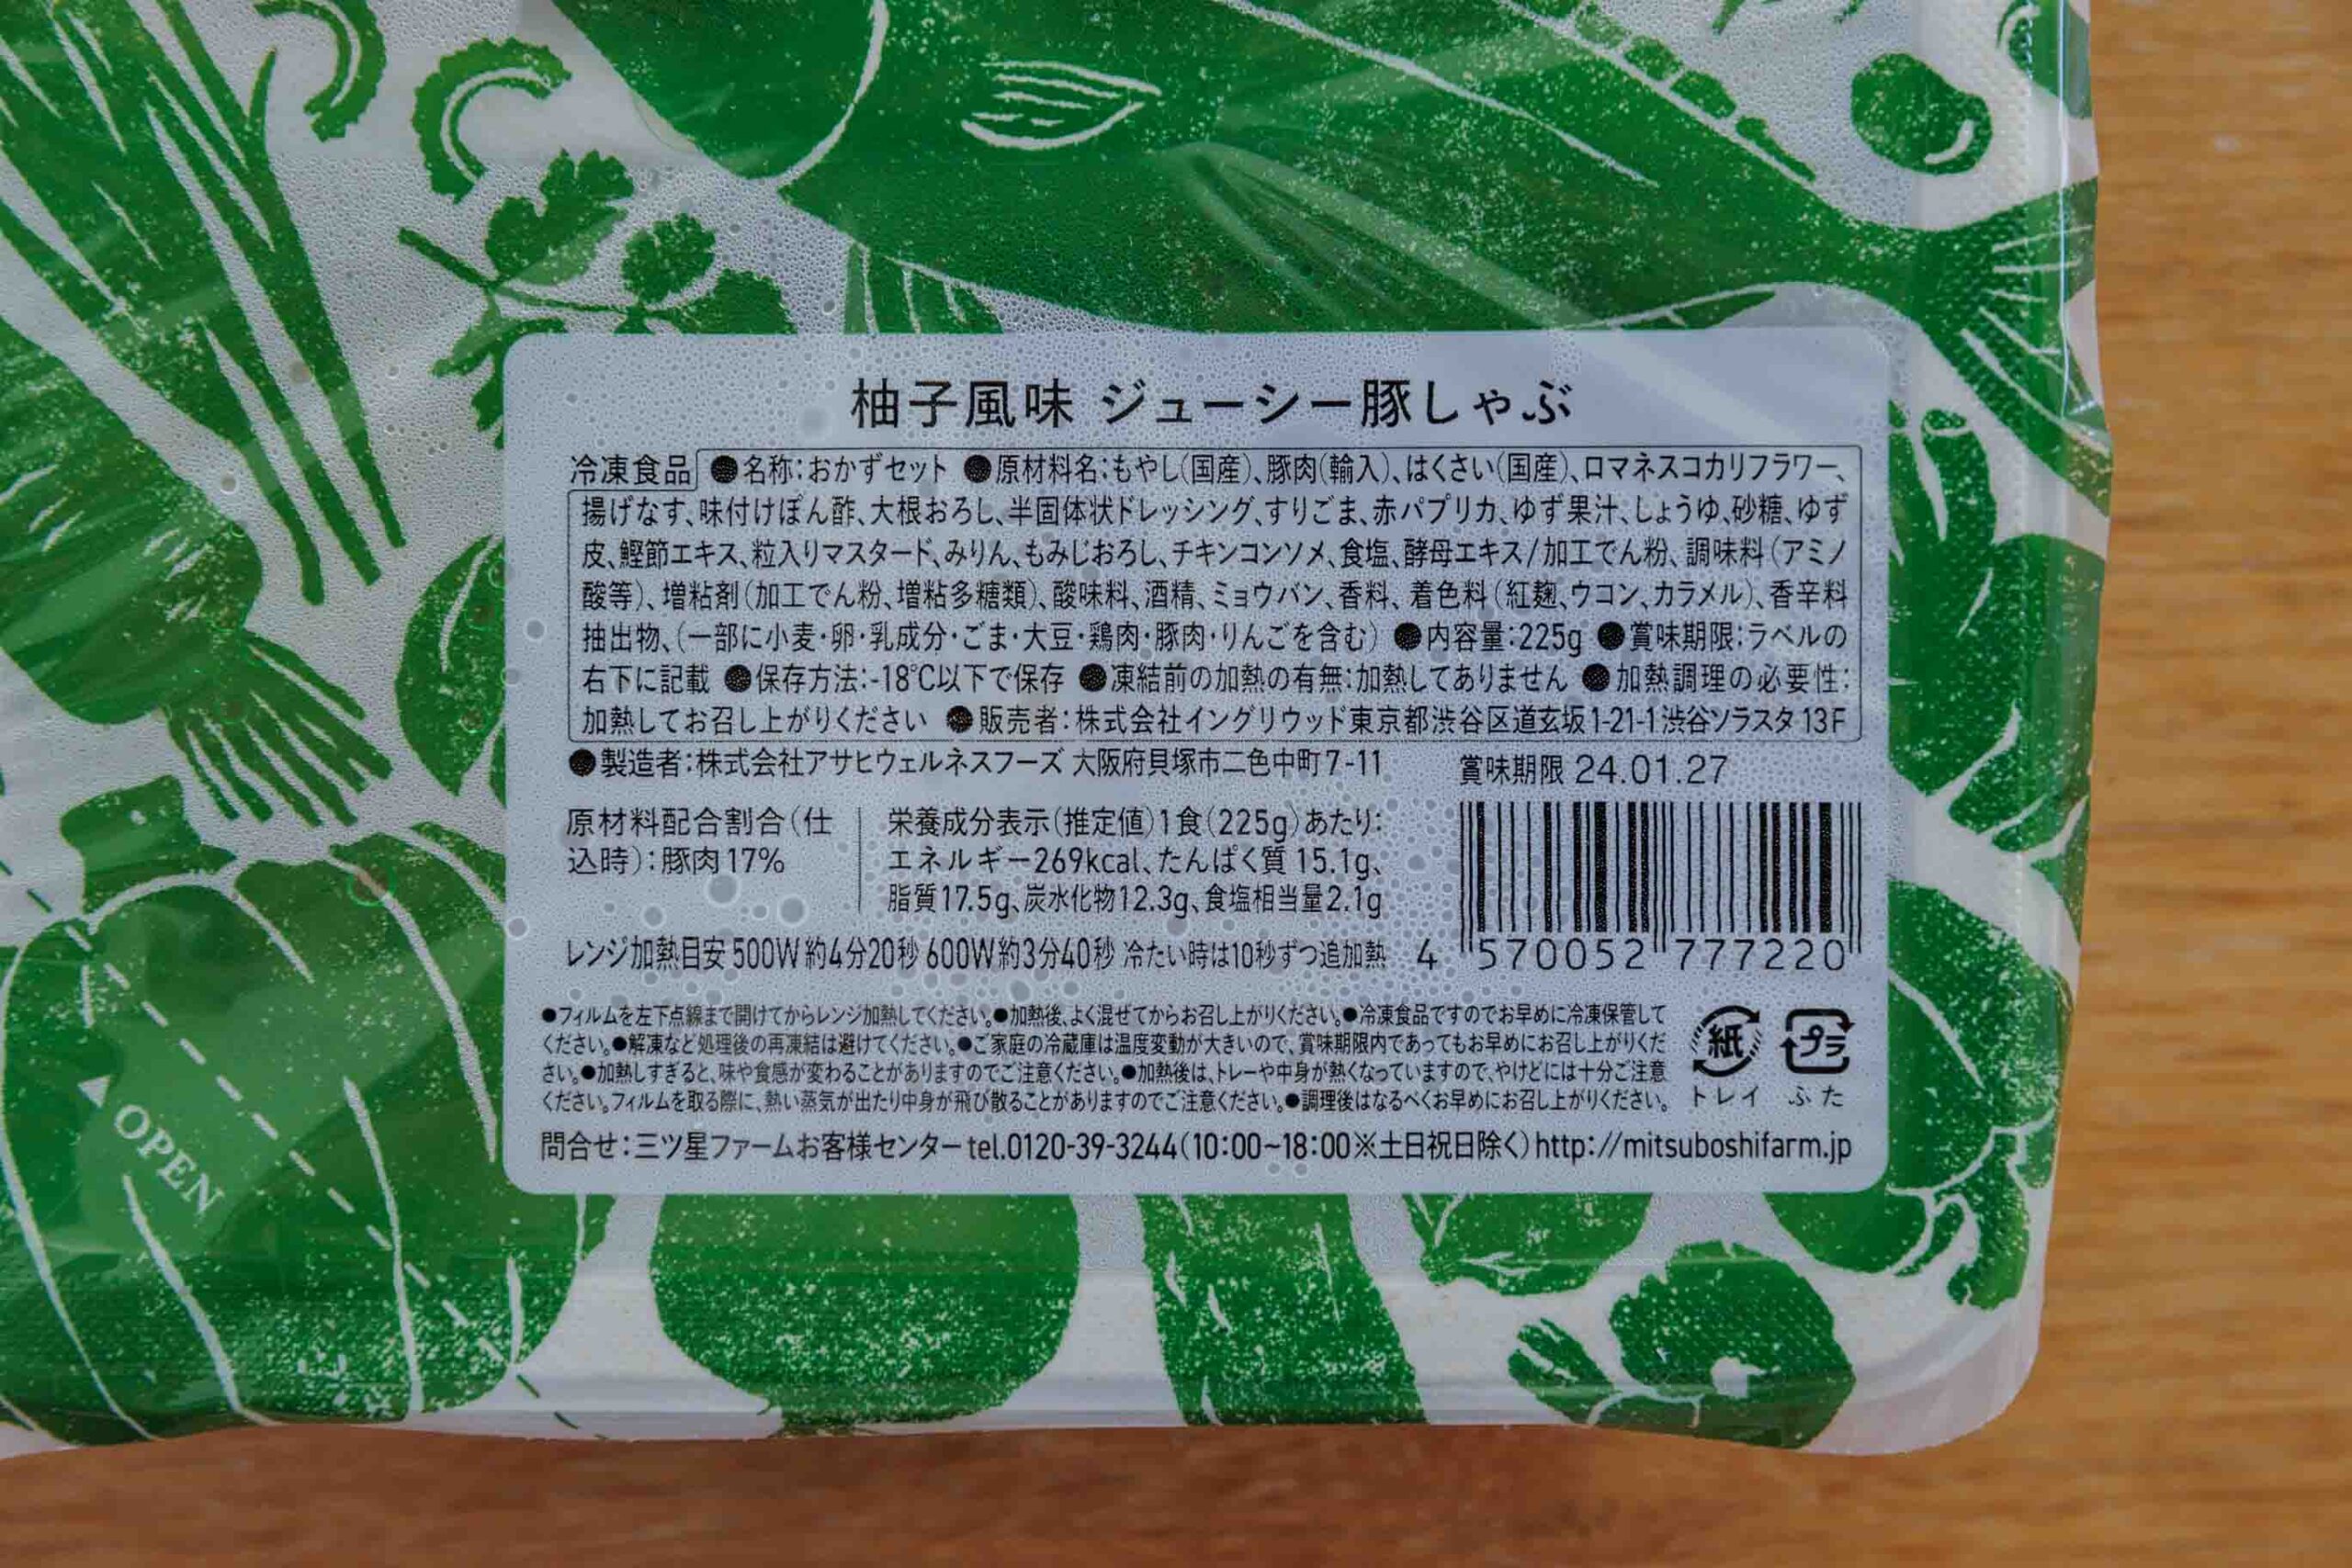 三ツ星ファーム「柚子風味ジューシー豚しゃぶ」のパッケージの拡大写真